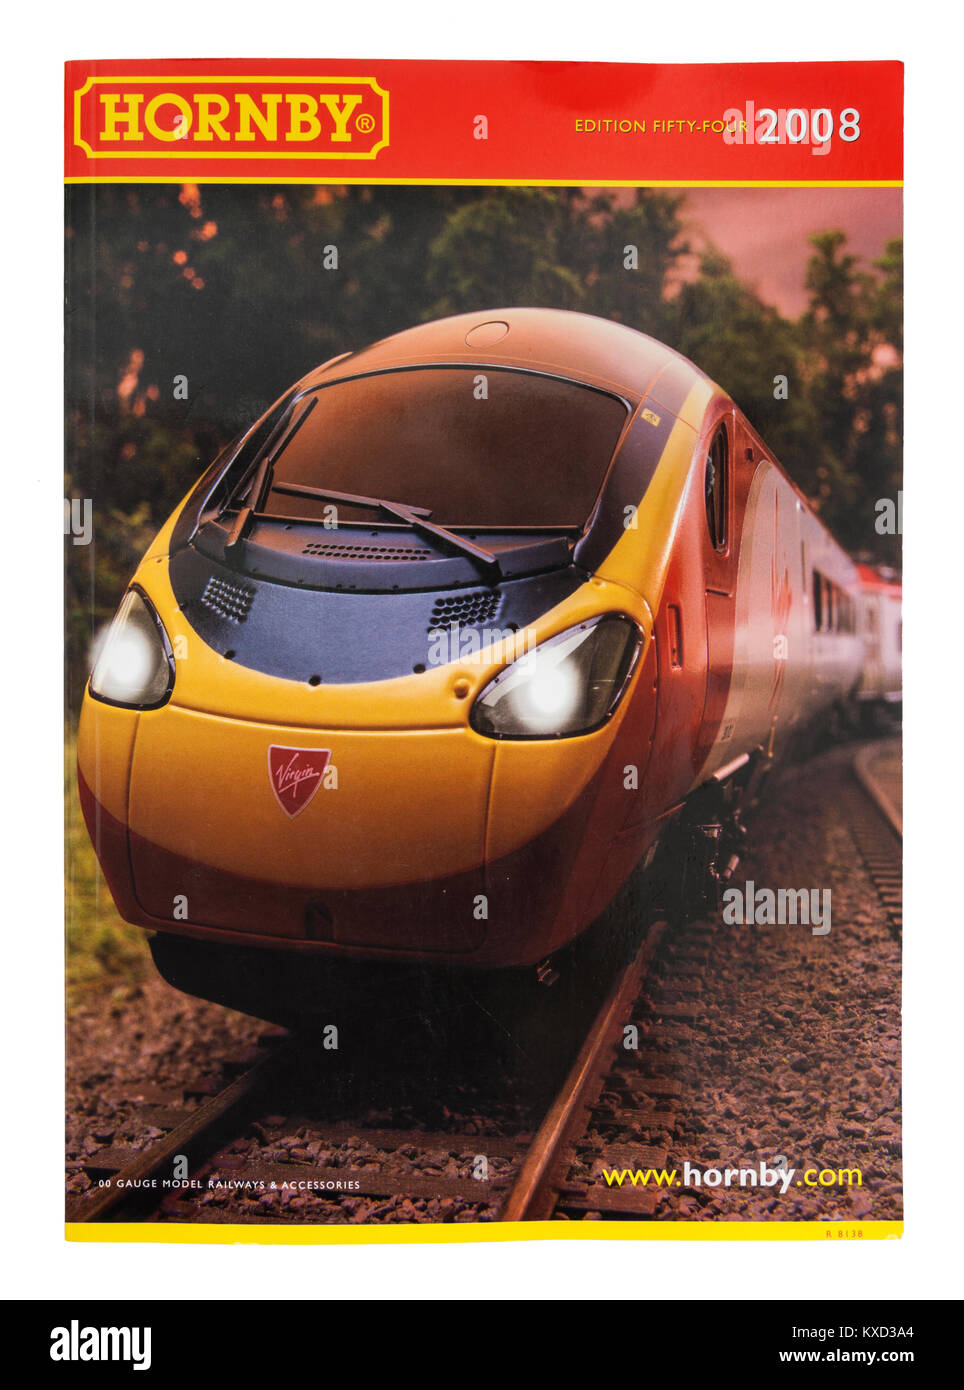 Modèle Hornby railways catalogue à partir de 2008 (édition 54) avec Virgin Trains locomotive sur le capot avant Banque D'Images